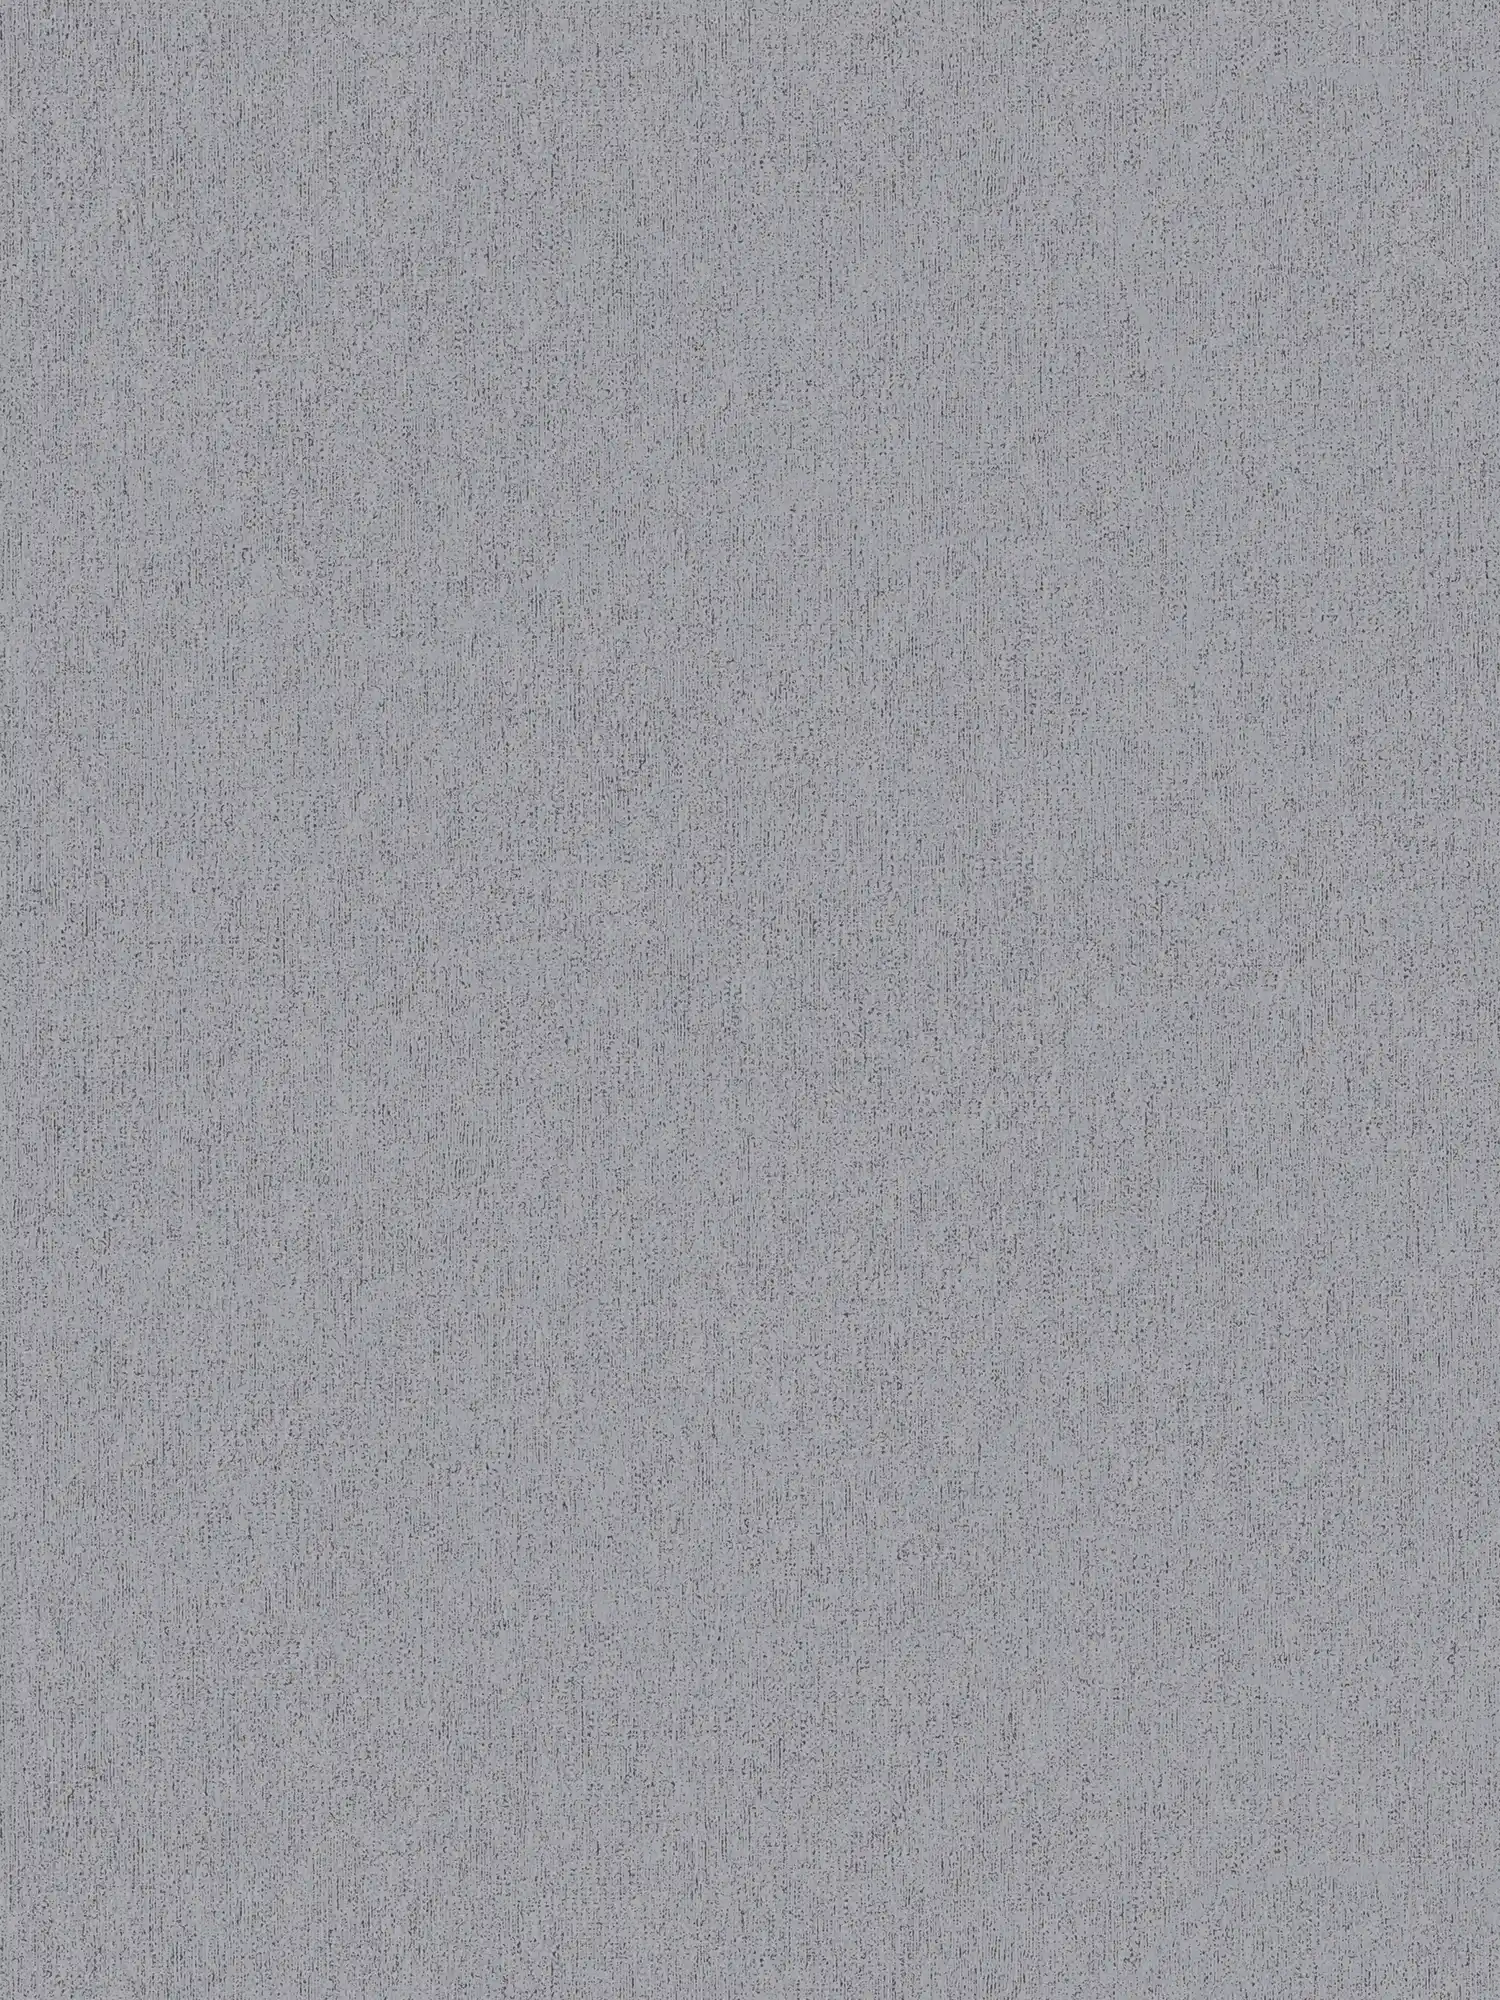 Papier peint intissé lisse aspect structuré - gris, gris foncé
